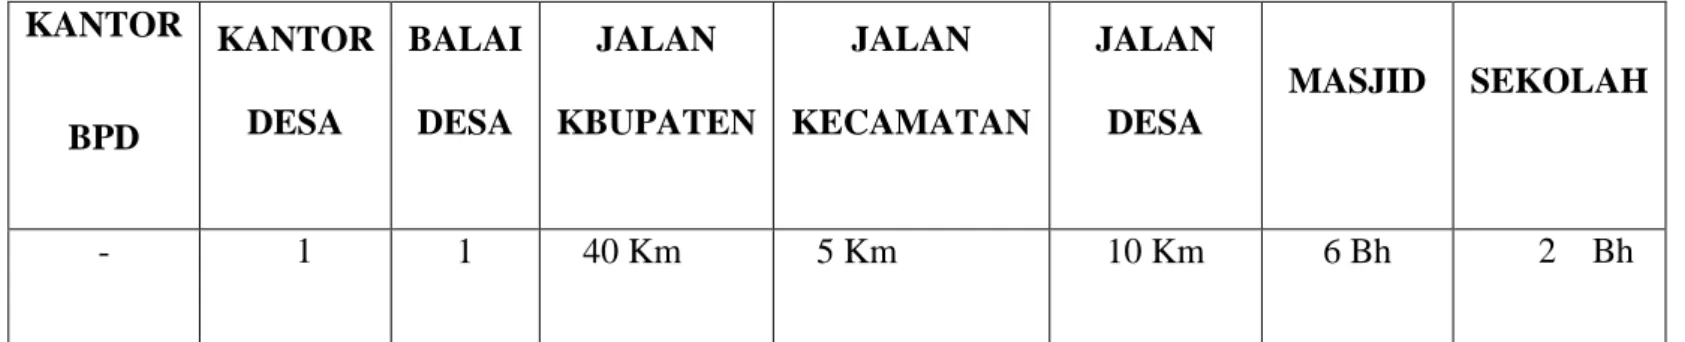 Tabel 4.6: Jumlah Penduduk Sesuai dengan Dusun/Lingkungan 